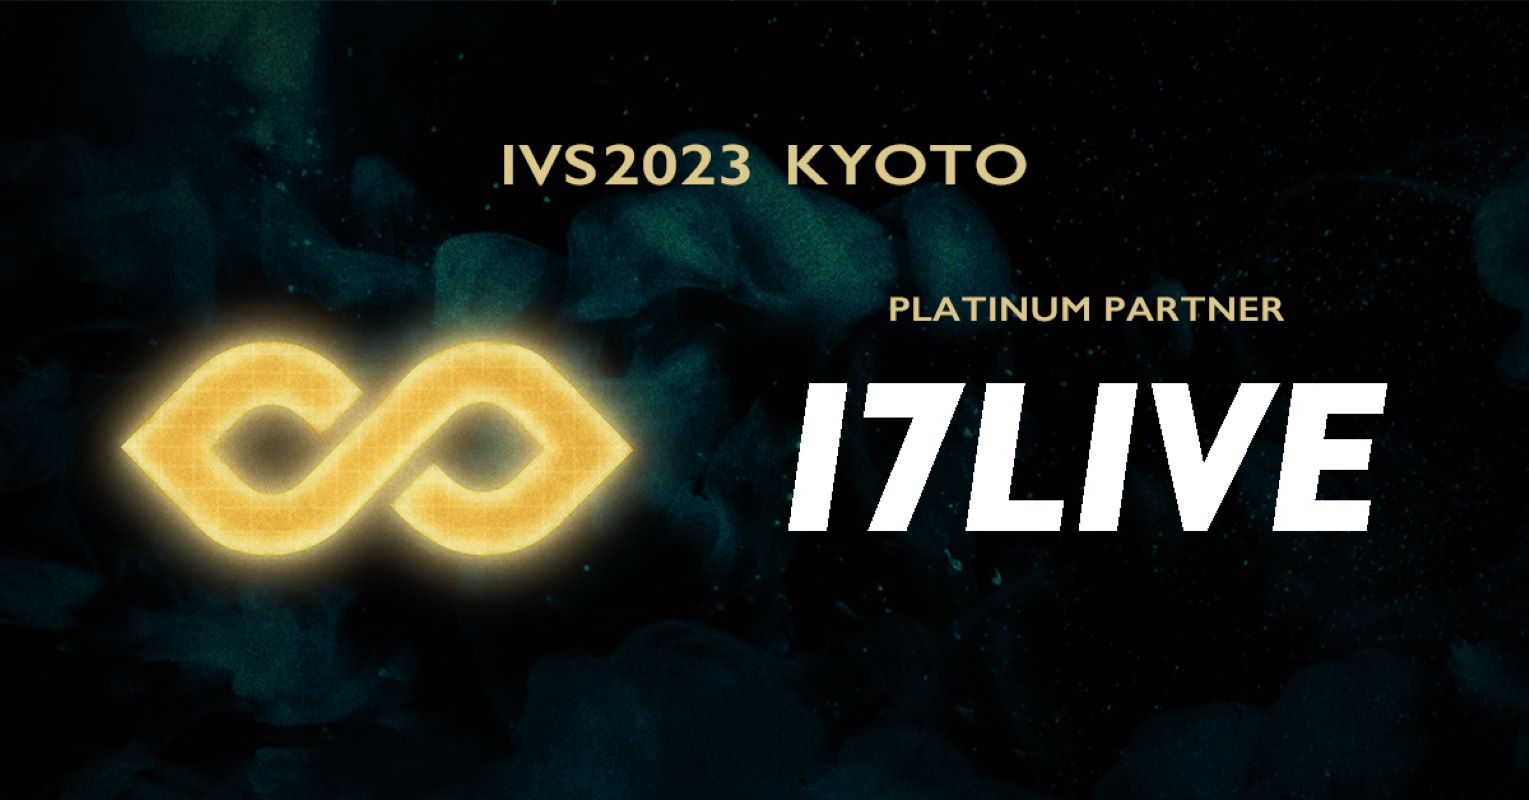 17LIVE、『IVS2023 KYOTO』に初出展